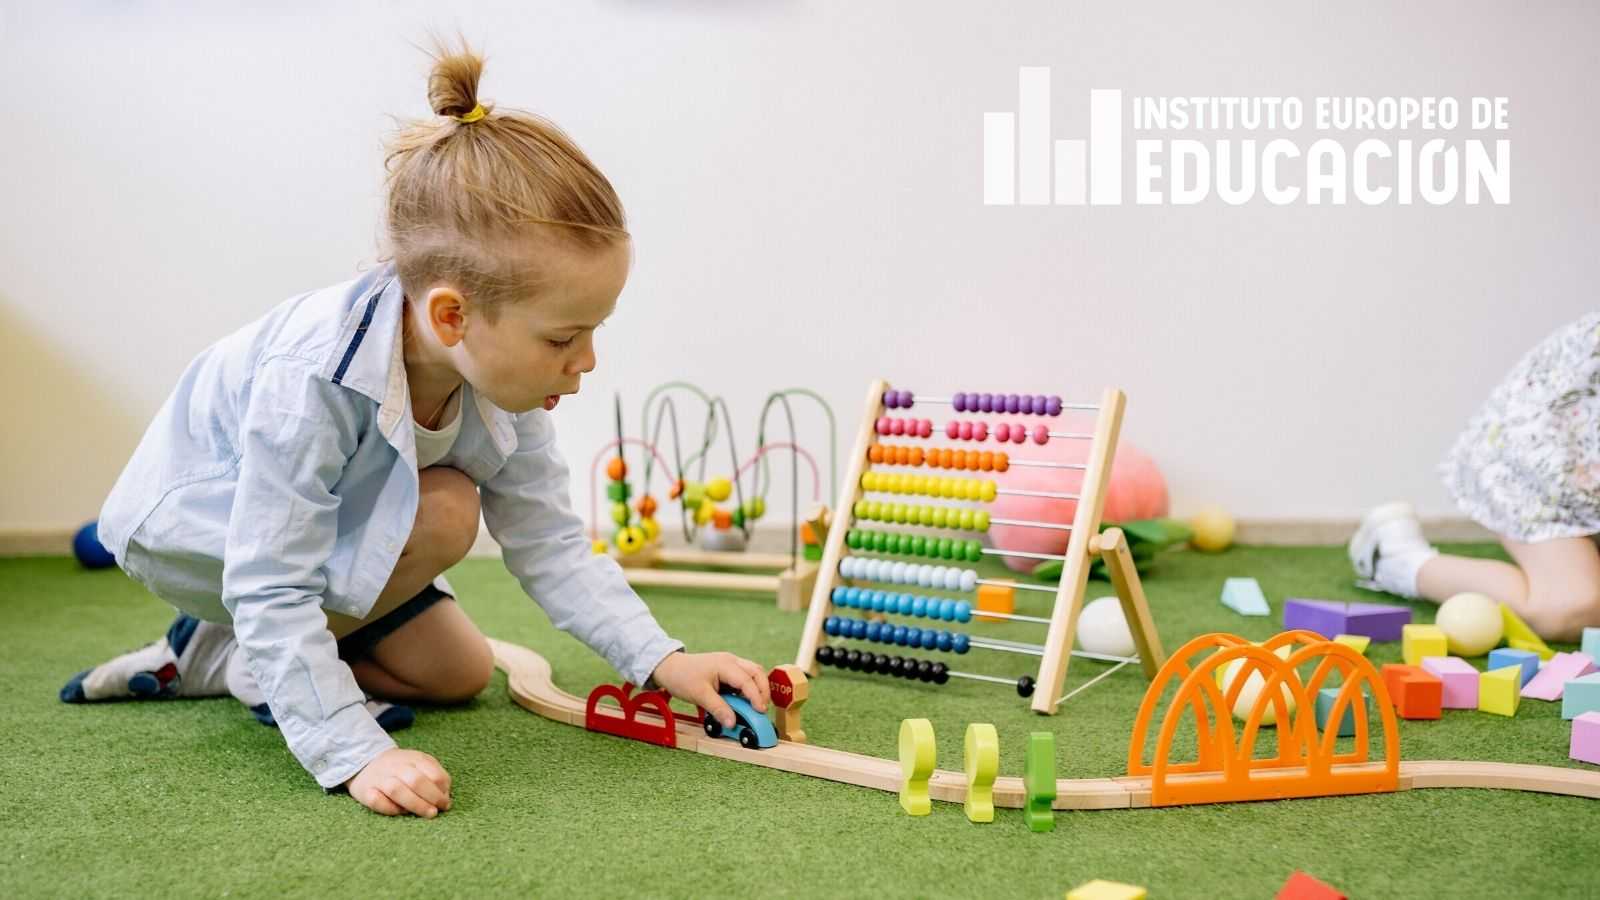 Tipos de juegos en la infancia - Instituto Europeo de Educación